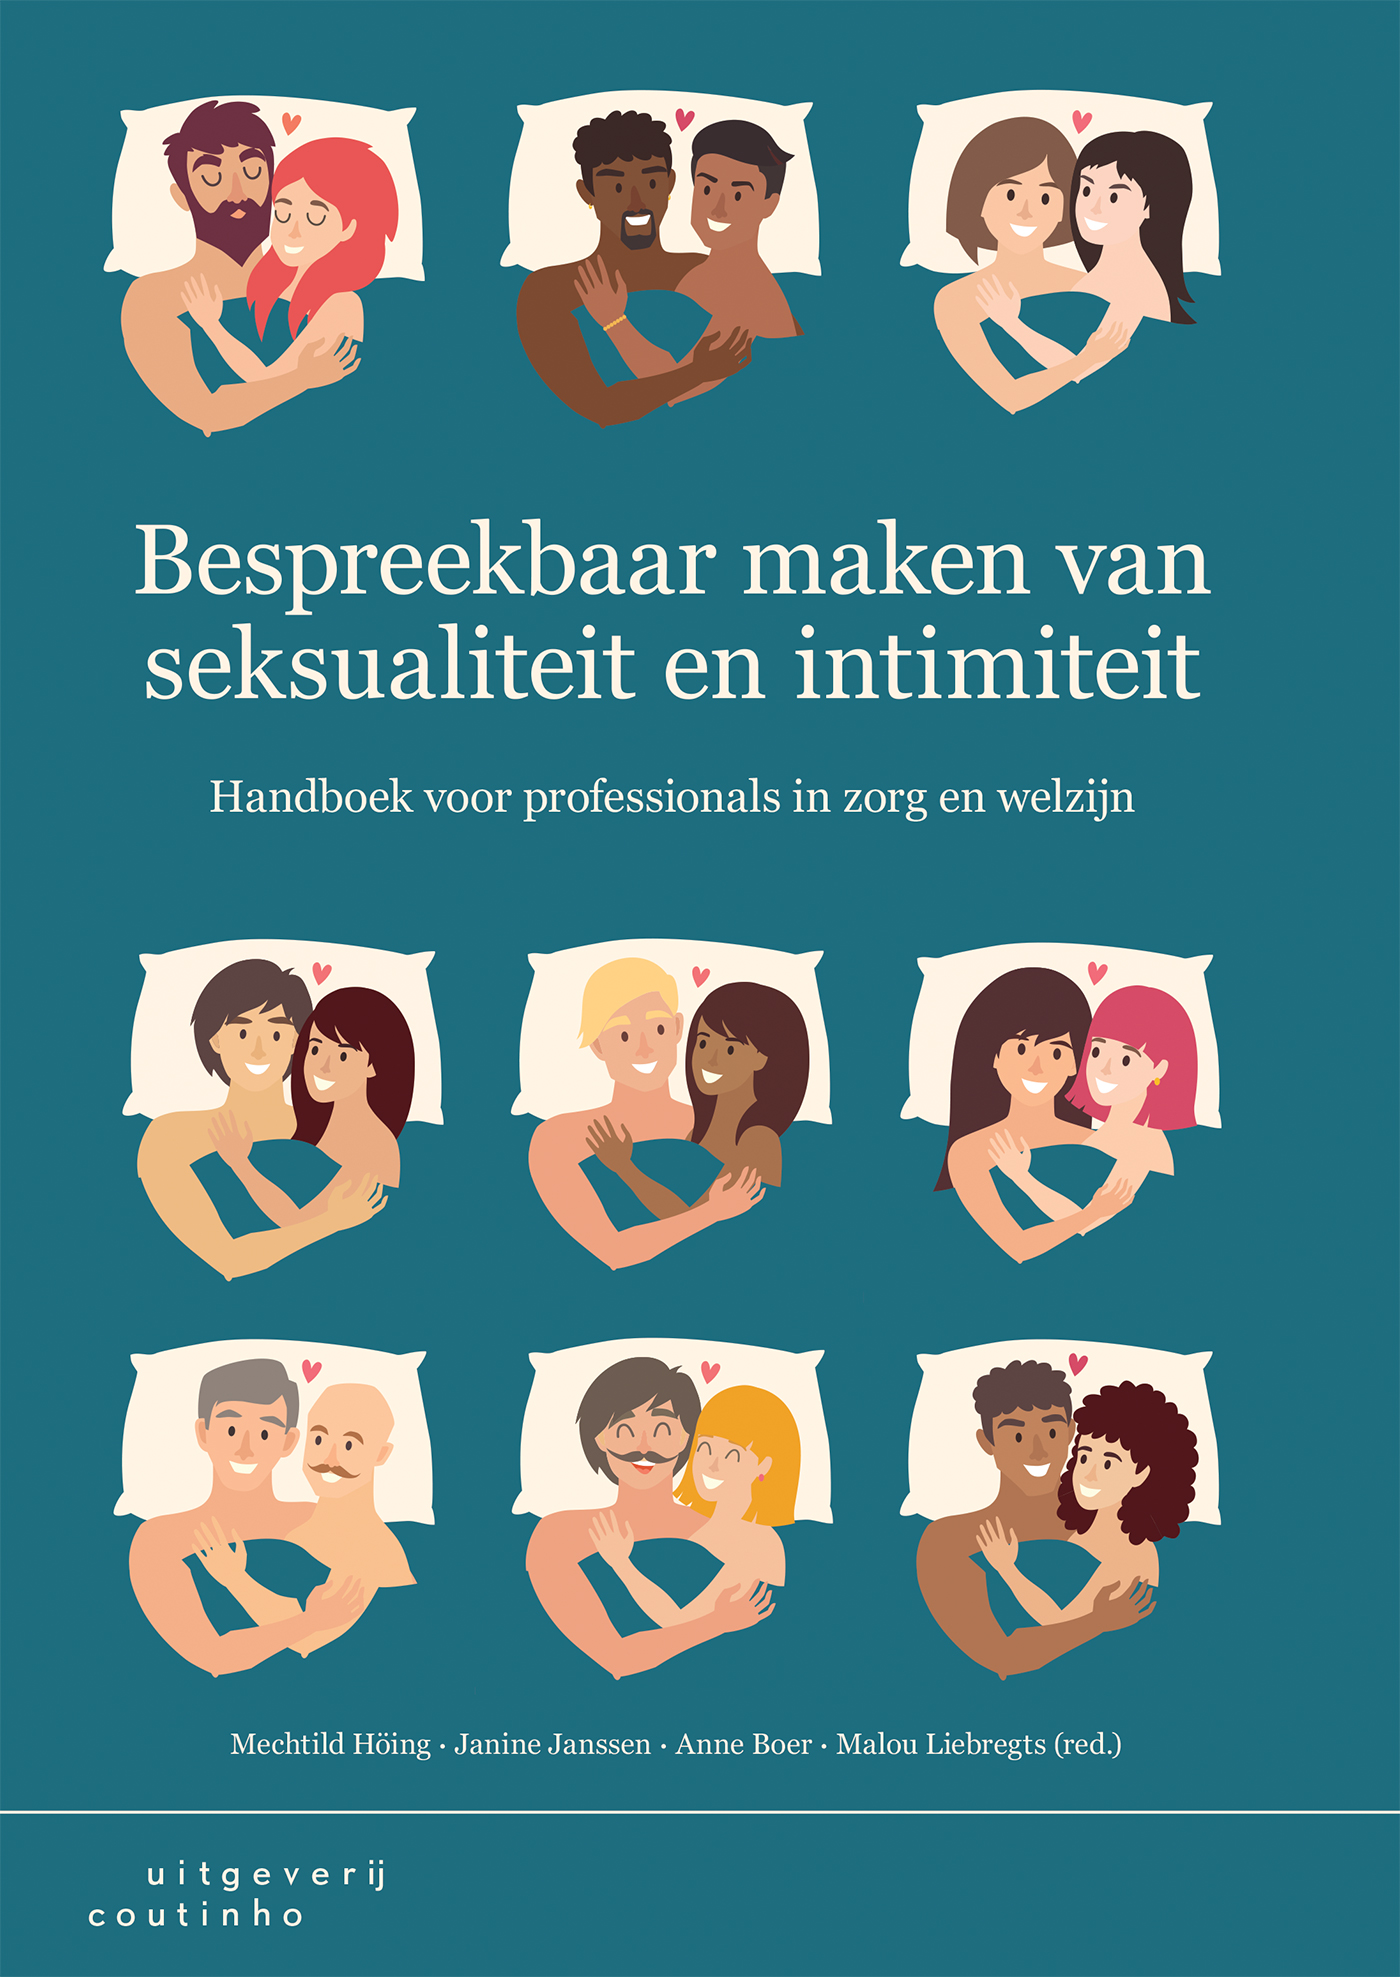 Bespreekbaar maken van seksualiteit en intimiteit (Ebook)